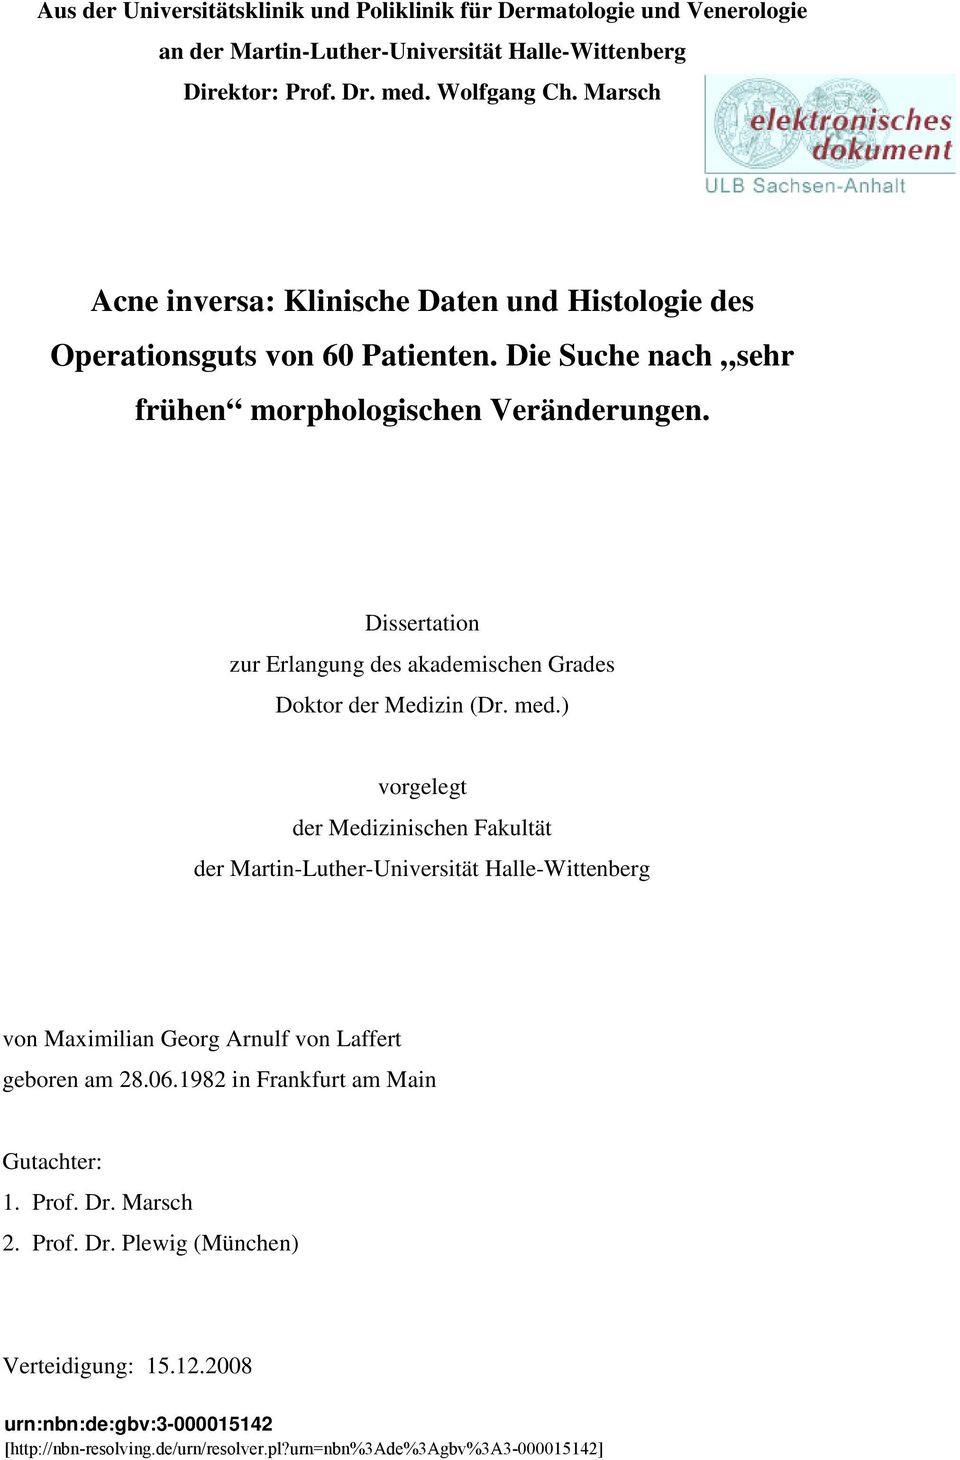 Dissertation zur Erlangung des akademischen Grades Doktor der Medizin (Dr. med.